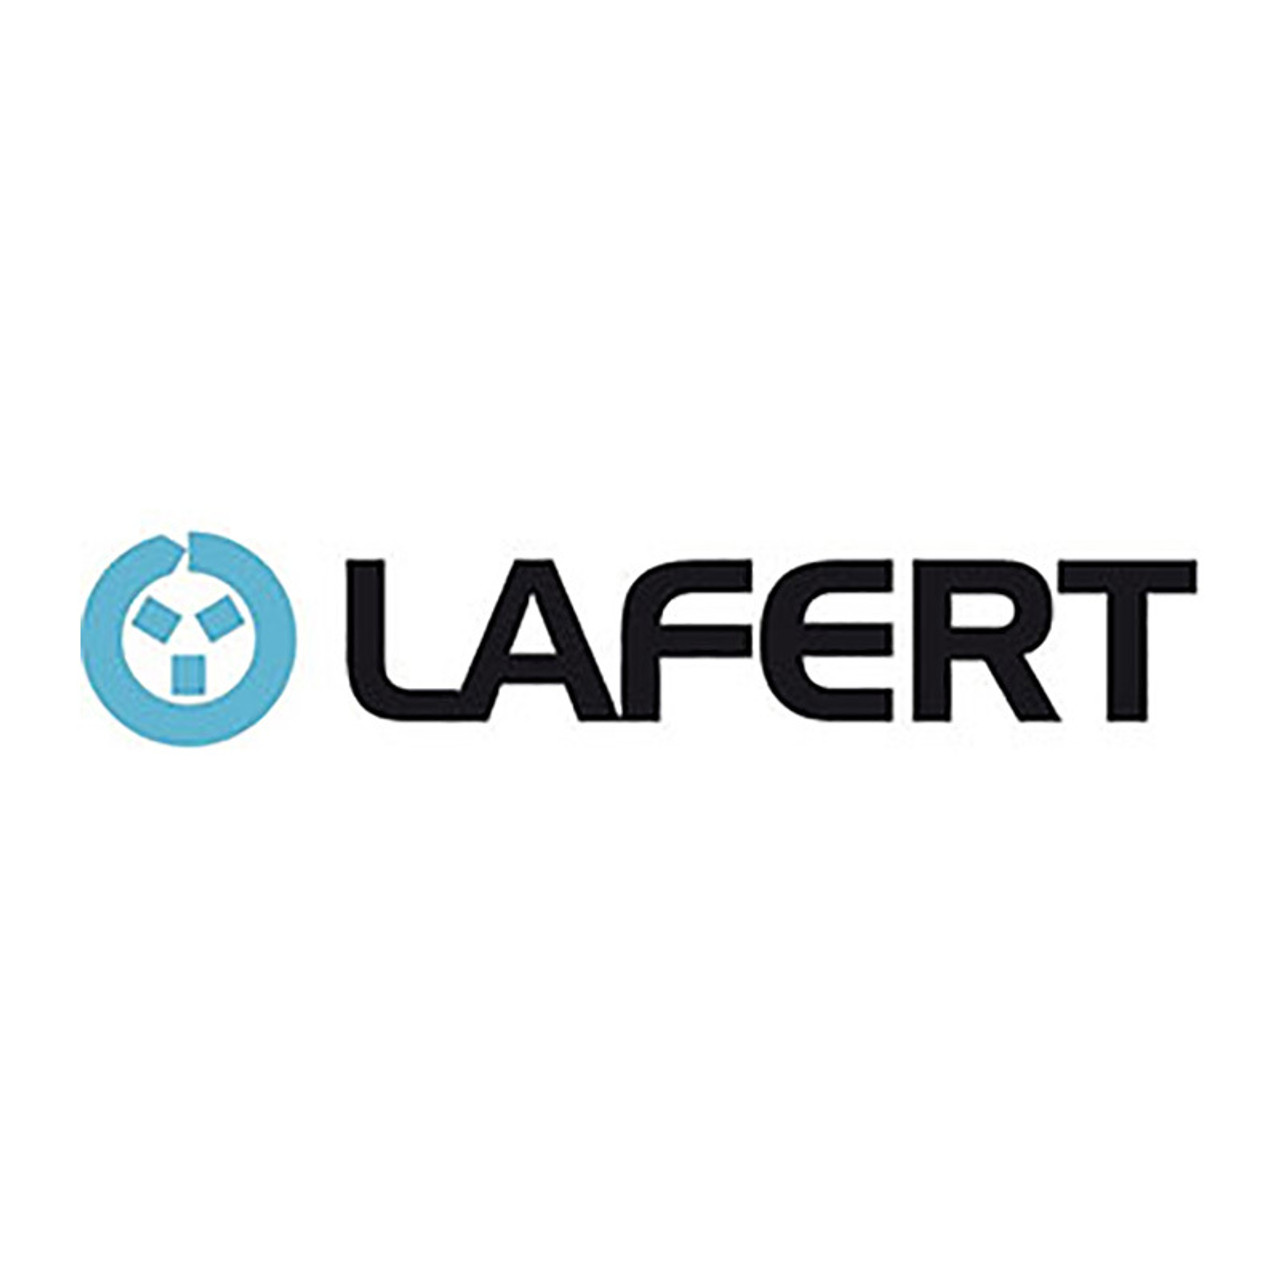 Lafert North America Corporate Logo